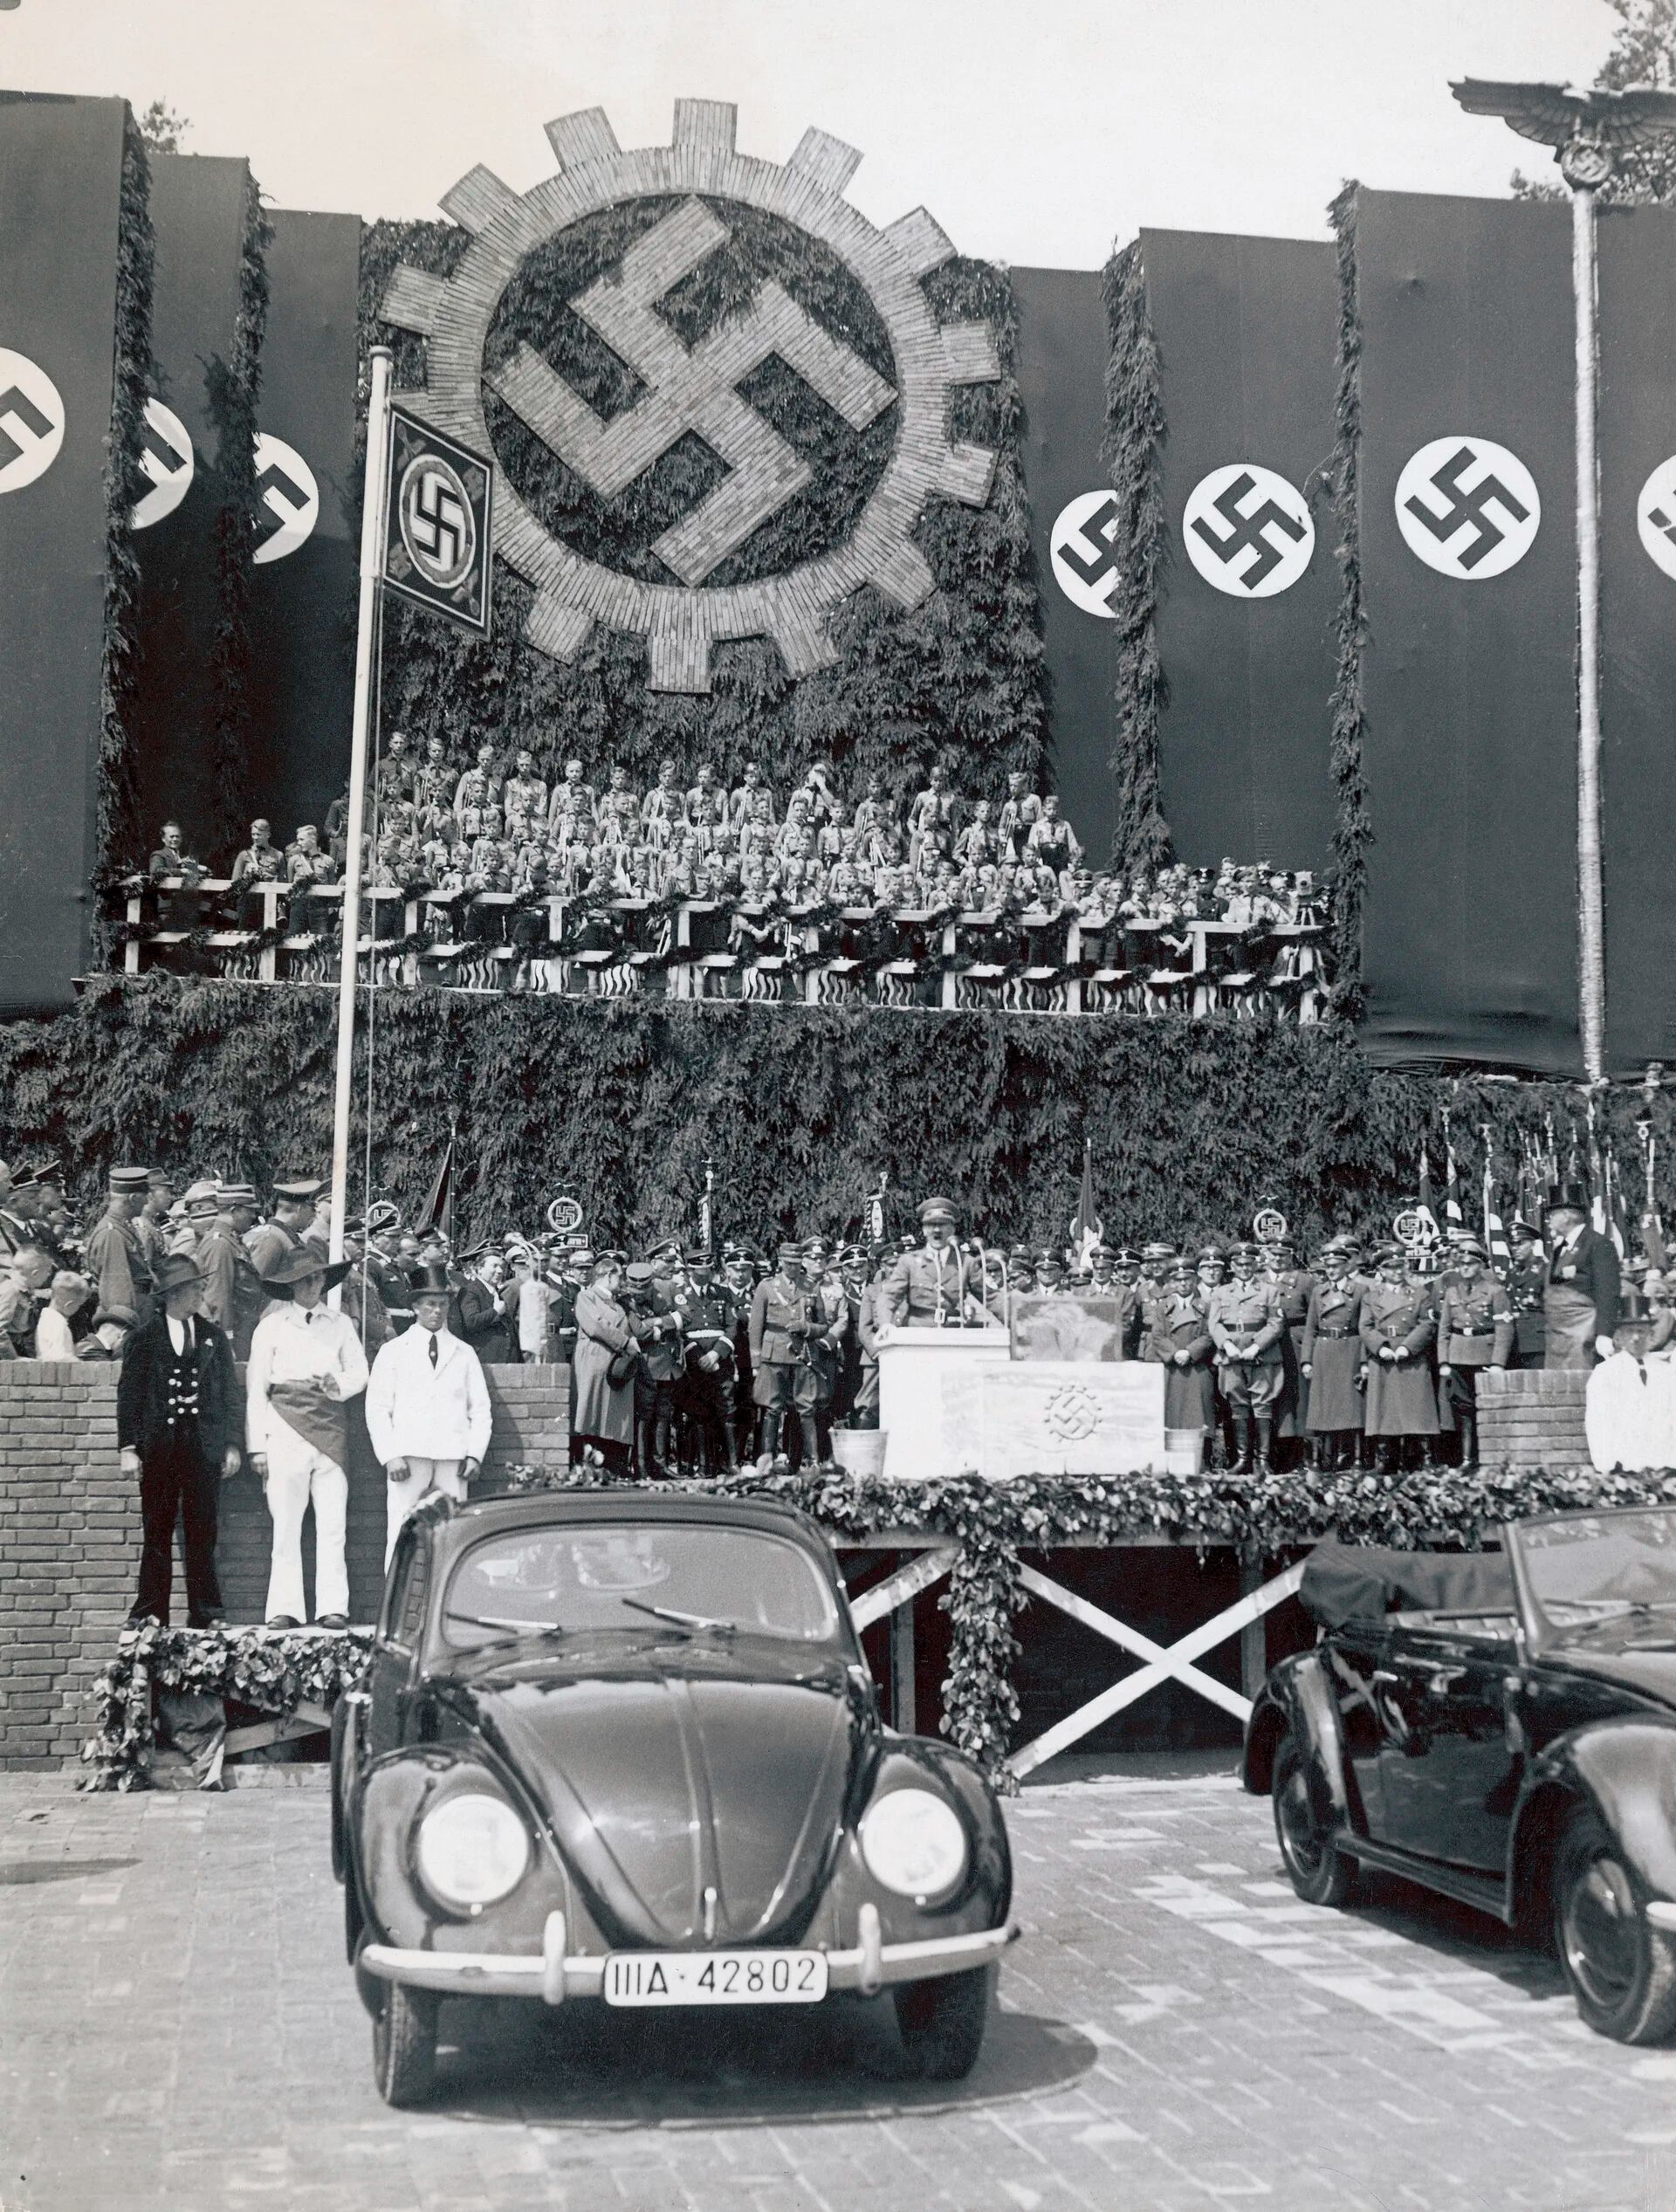 El 27 de mayo de 1938, Hitler puso la piedra fundamental de lo que sería la planta de producción del Volkswagen. Sería la planta más grande del mundo y a sus alrededores nacería la ciudad de Wolfsburgo.